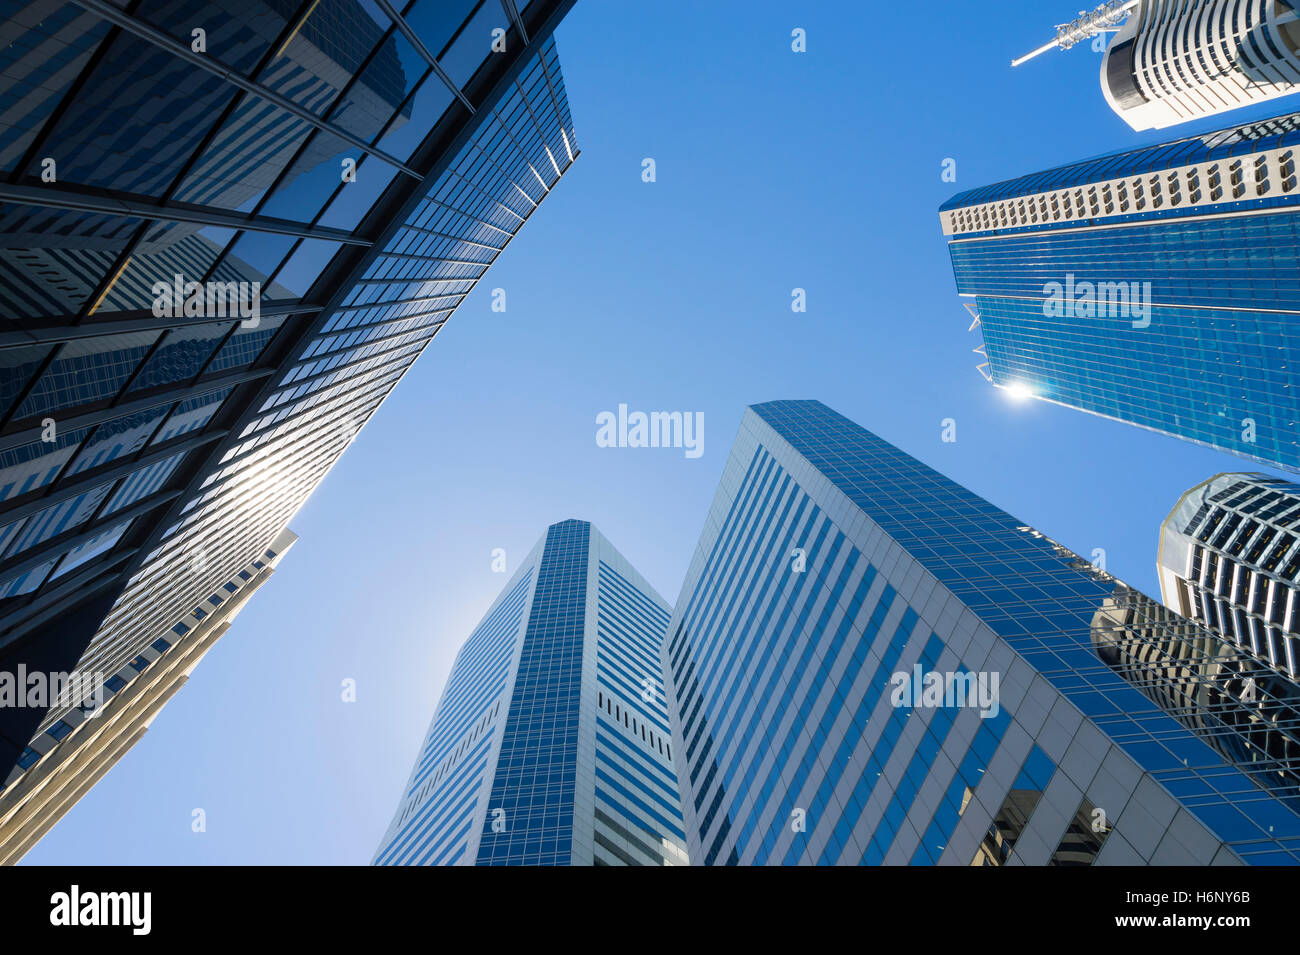 Les gratte-ciel modernes concept Banque D'Images